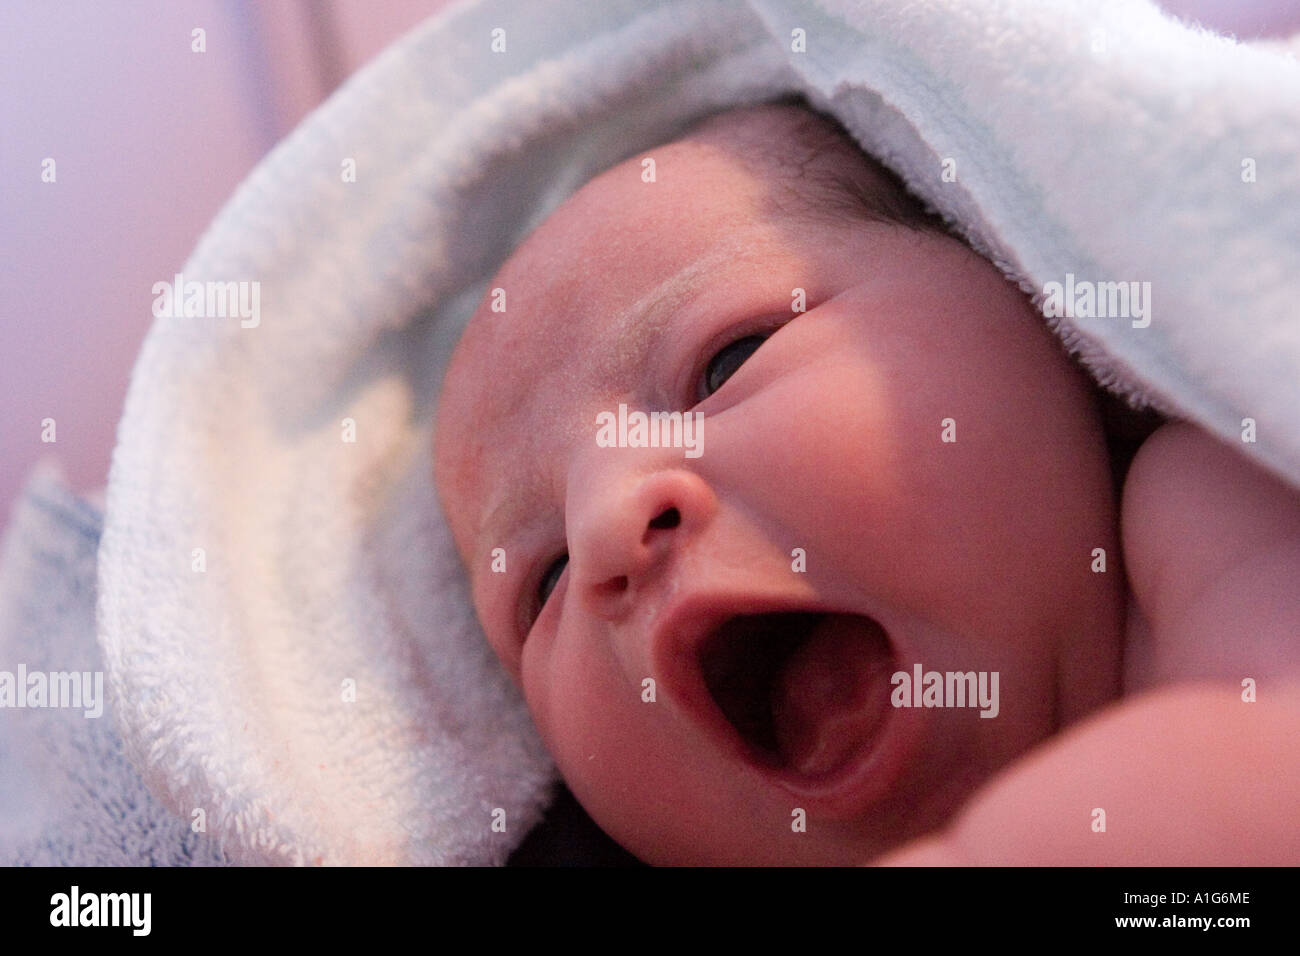 Hermoso bebé recién nacido envuelto en una toalla verde después de bañarse